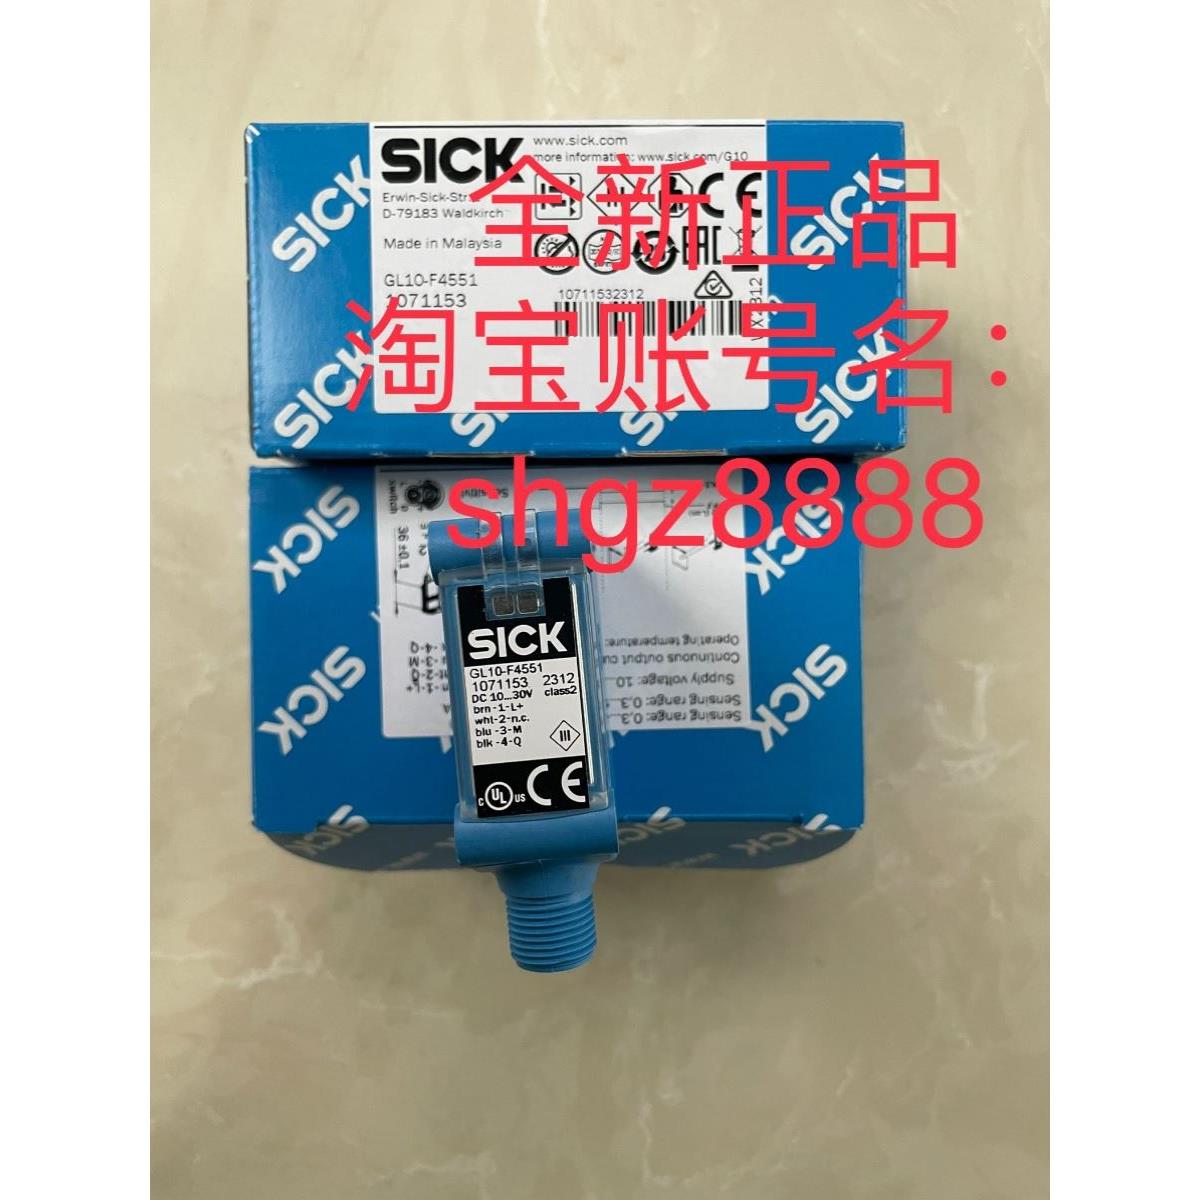 议价1071153 GL10-F4551 GRSE18-P1147SICK西克光电传器传器 电子元器件市场 其它元器件 原图主图